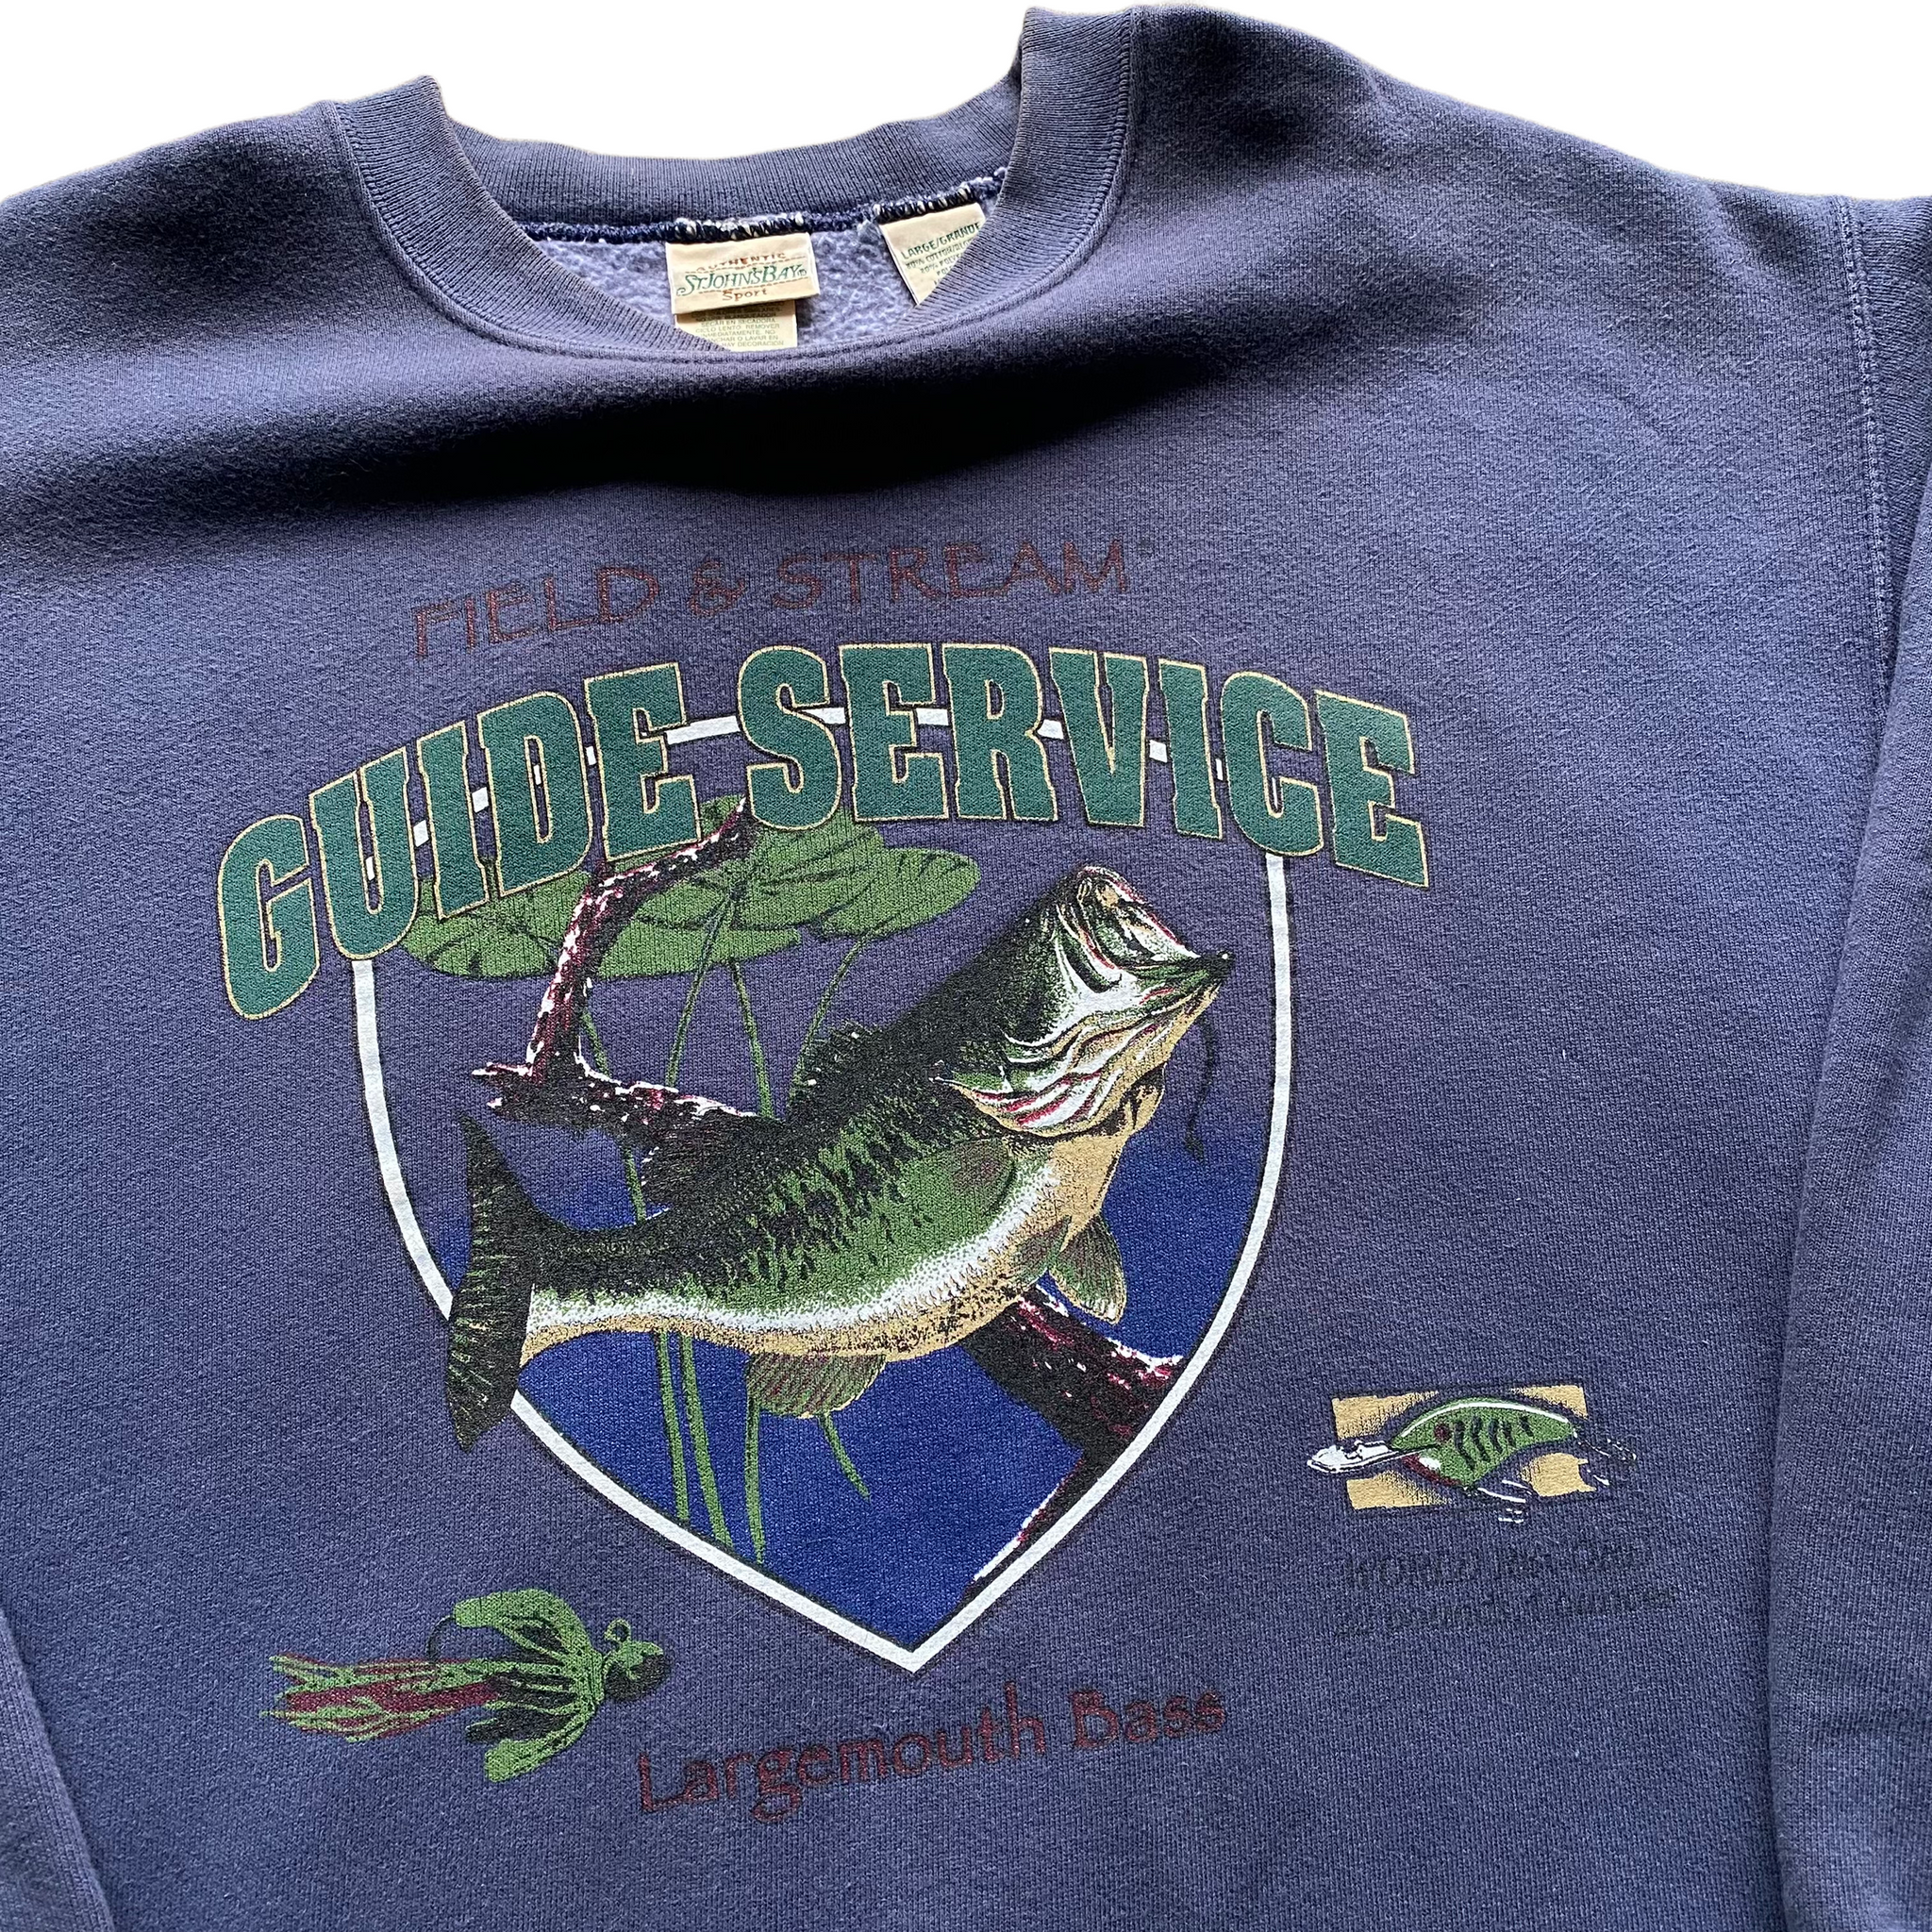 Guide series bass sweatshirt medium – Vintage Sponsor